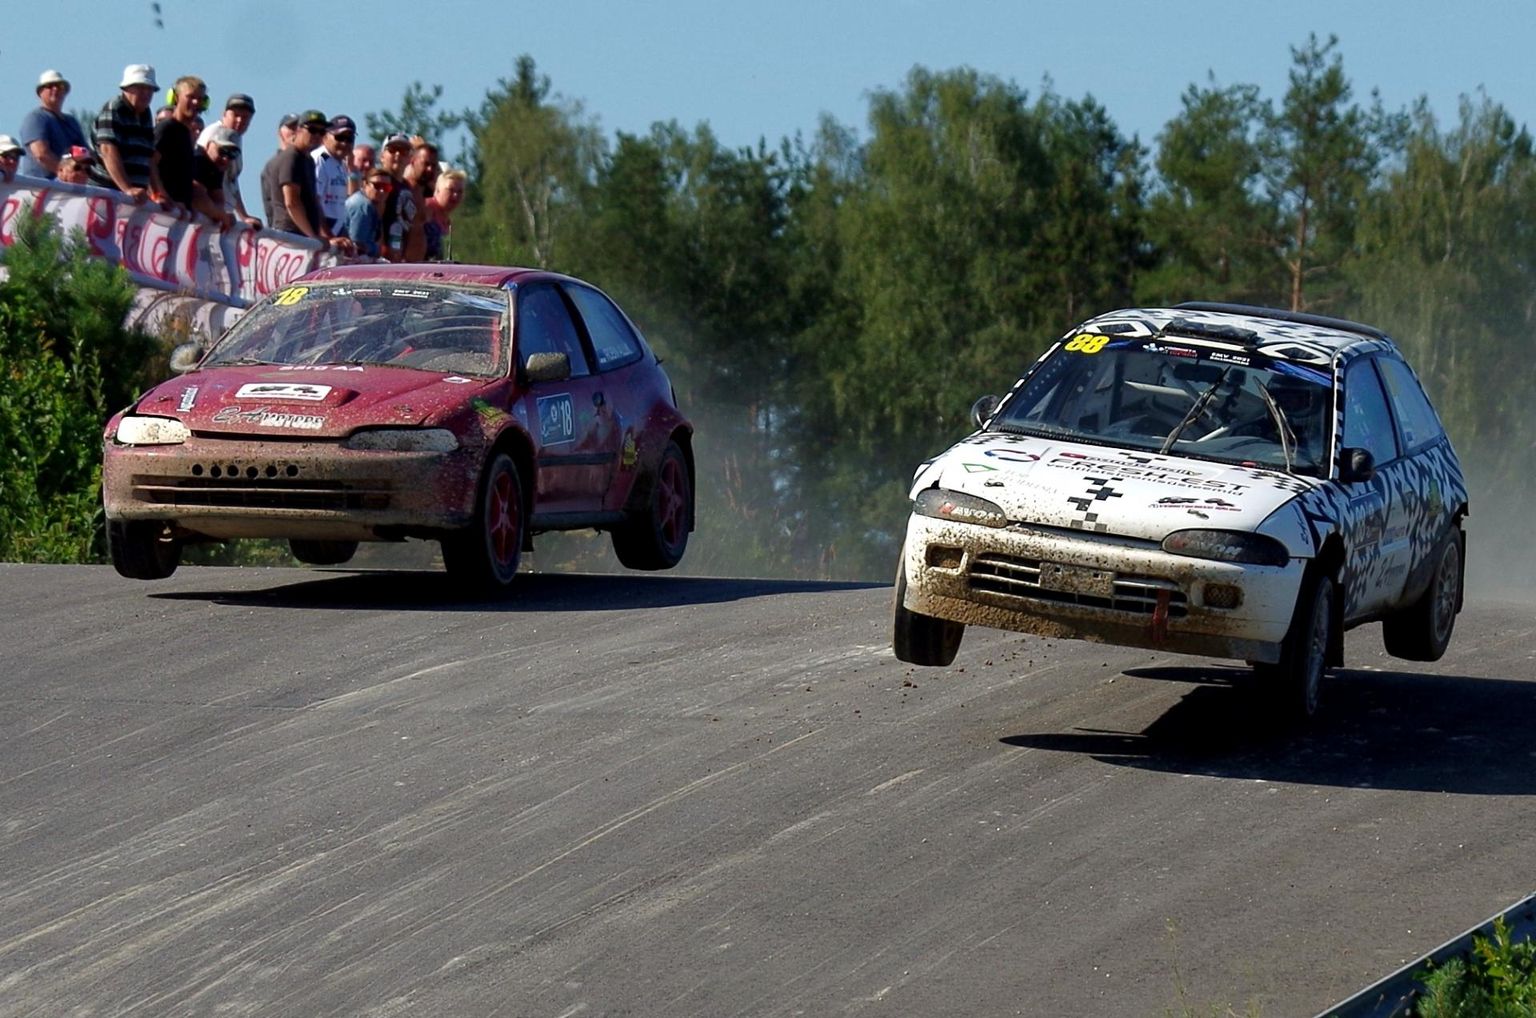 Kaks Allik Racingu klubi sõitjat võistlustules: Robin Allik (vasakul) ja Kevin Allik (paremal).